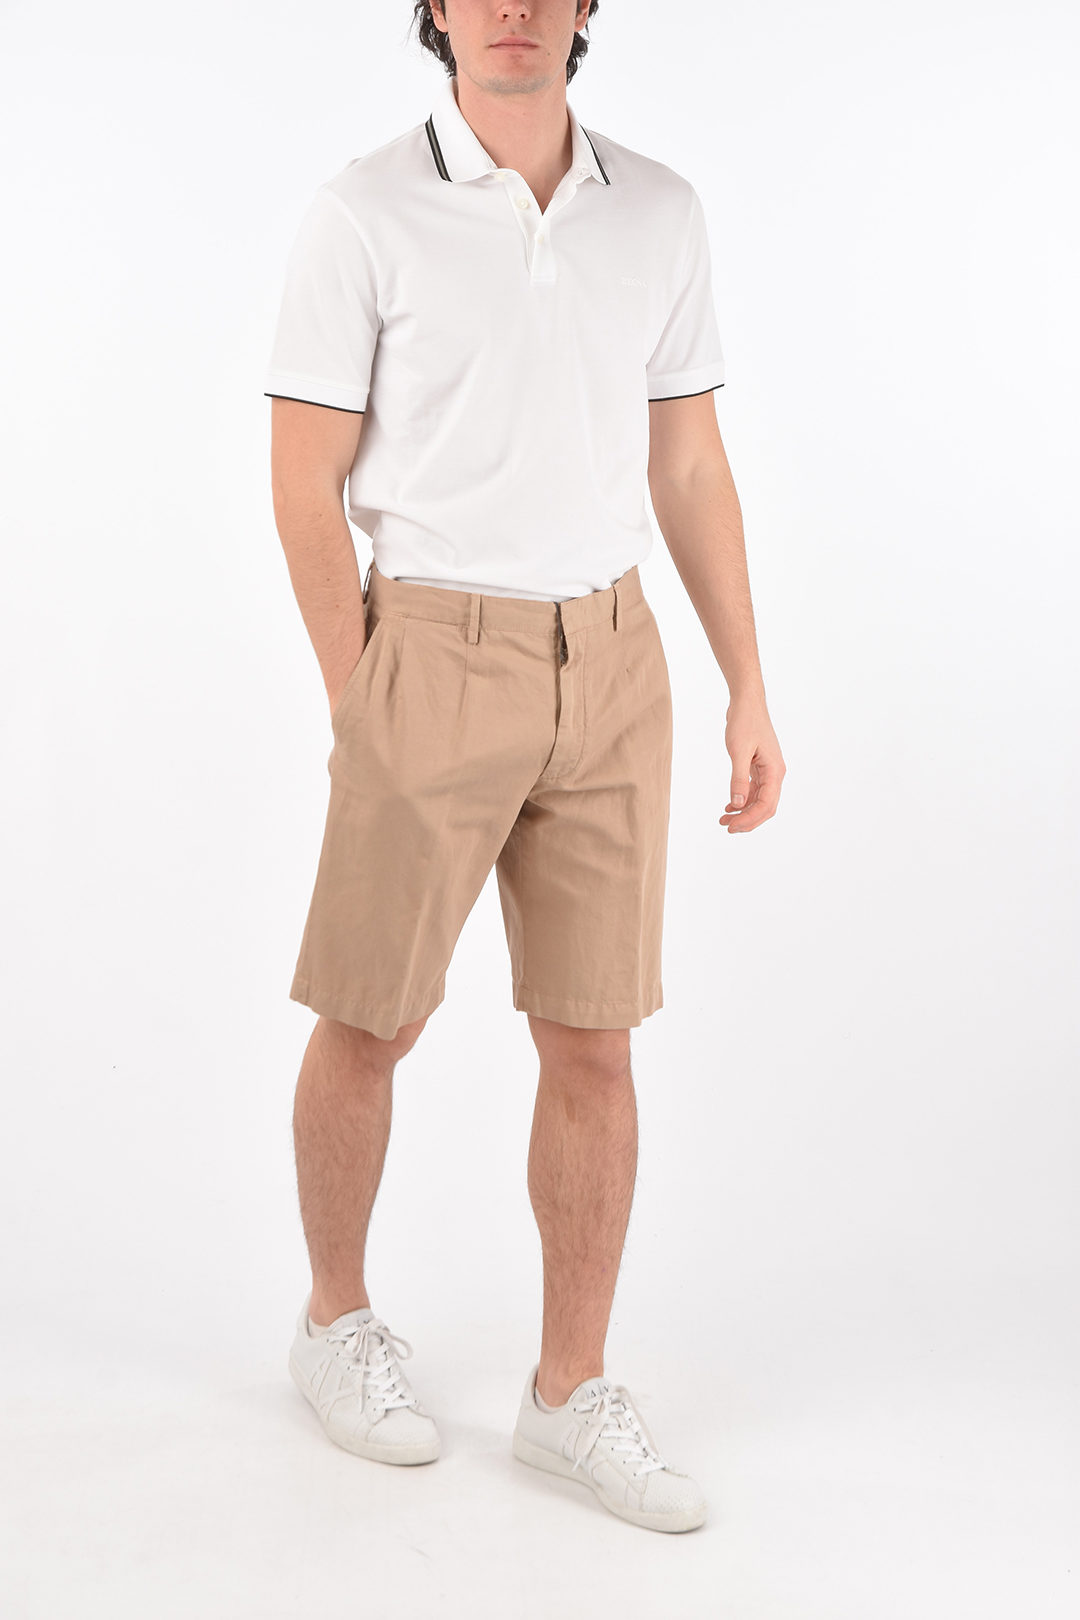 EZ LUXURY cotton and linen single pleat shorts